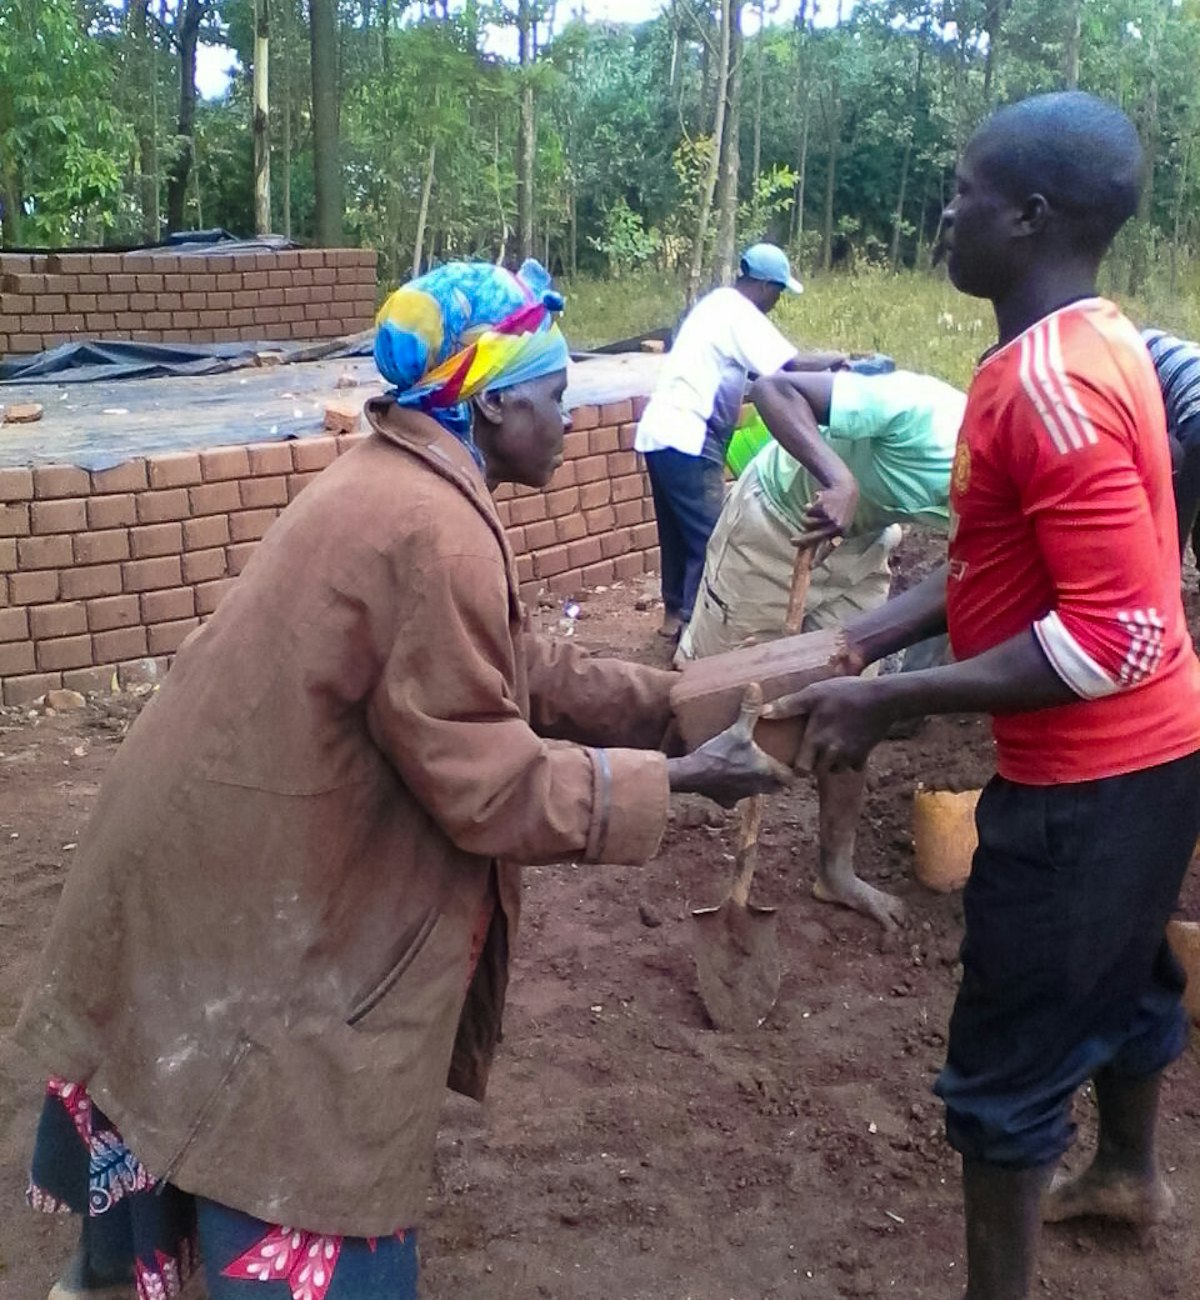 El proyecto de construcción de un centro educativo en Namawanga, Kenia, contó con una amplia participación de la comunidad. Actualmente se están llevando a cabo proyectos similares en otras partes del país.